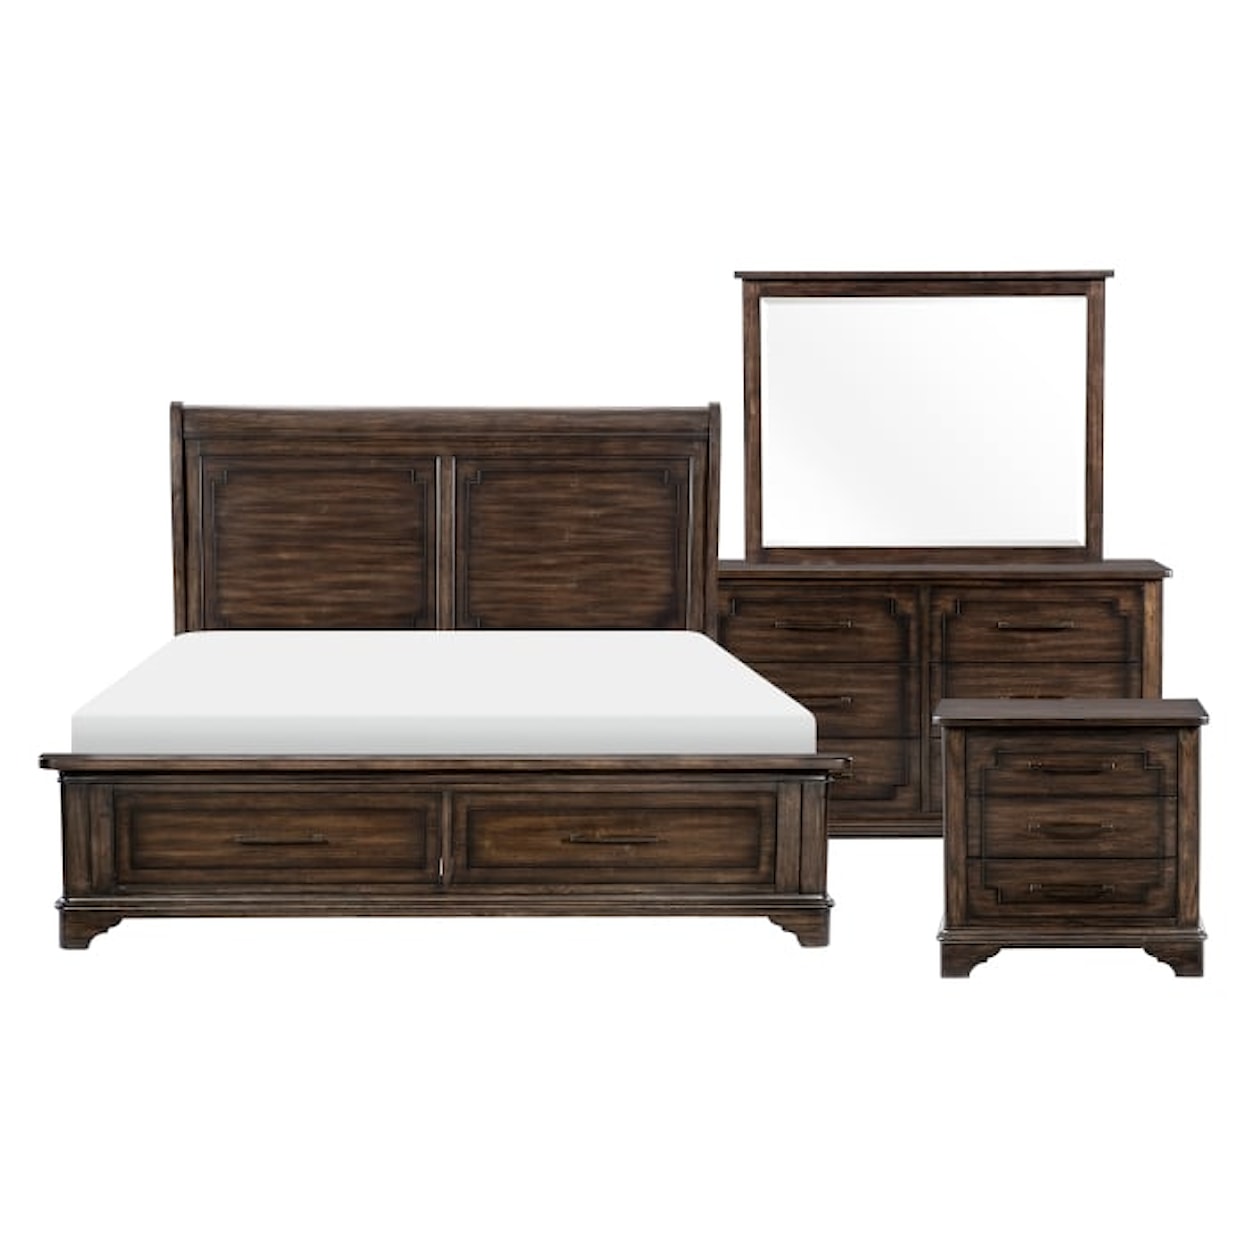 Homelegance Furniture Boone 4-Piece Queen Bedroom Set